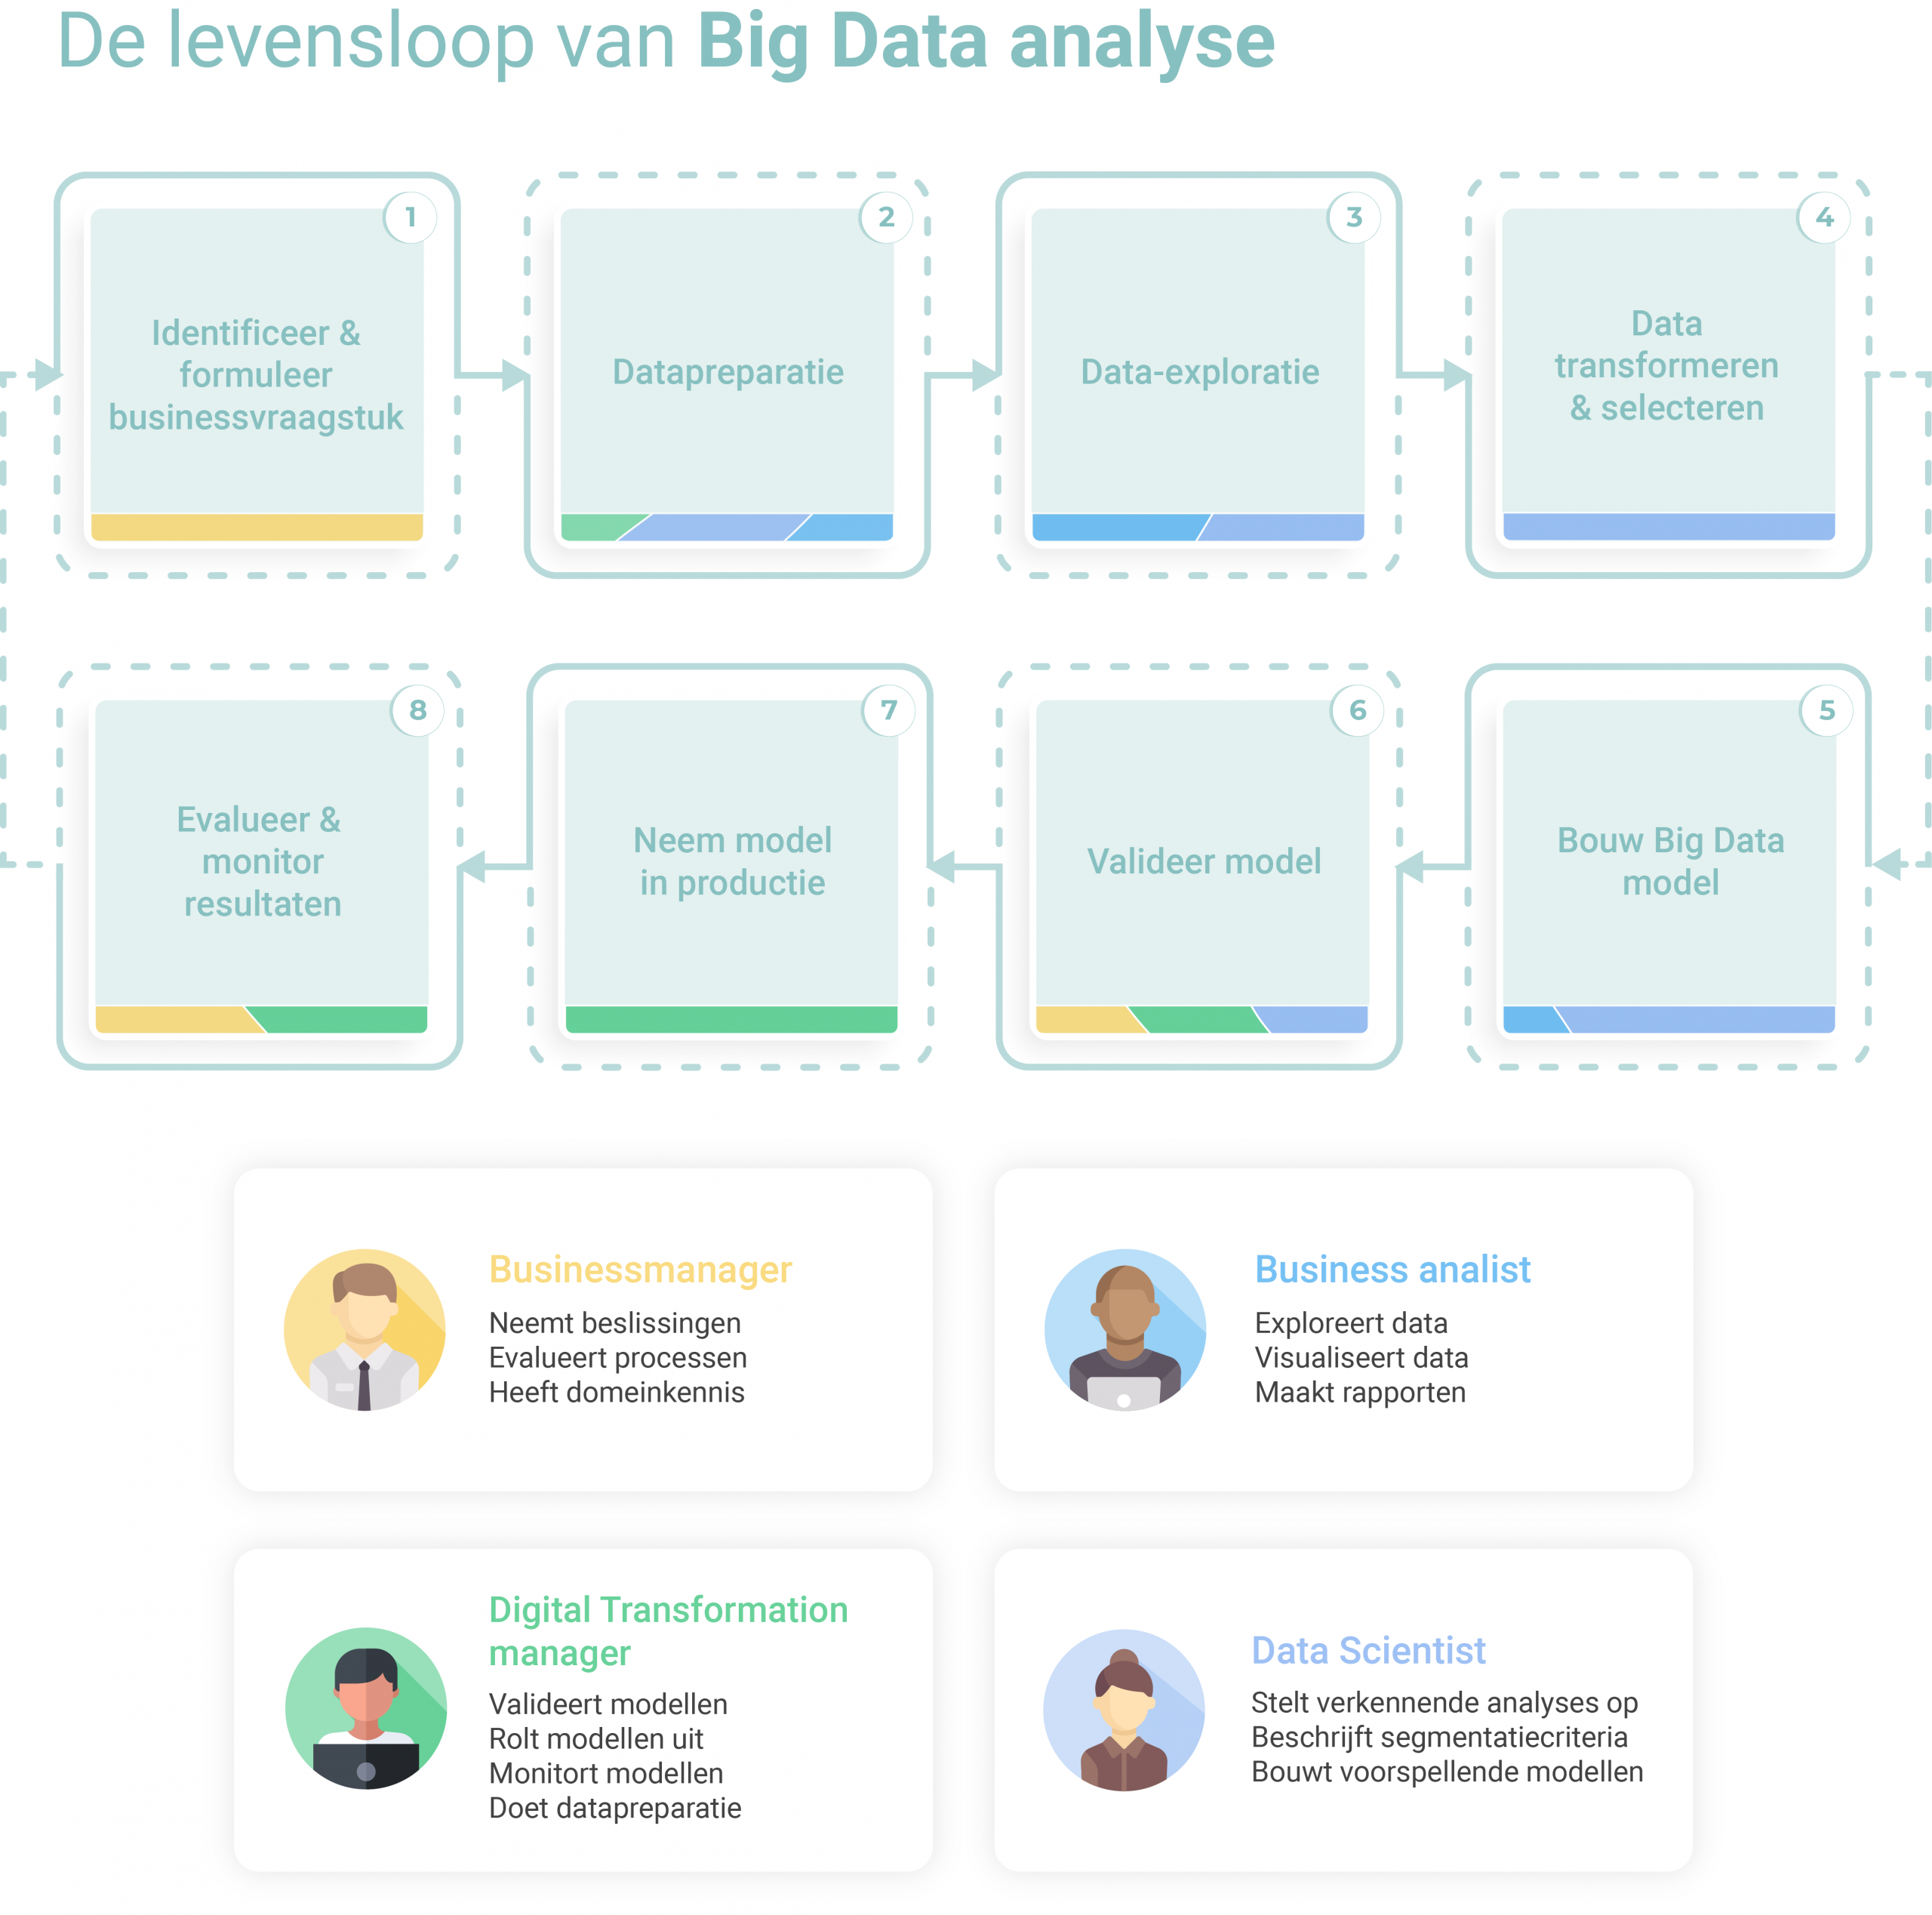 De levensloop van Big Data analyse